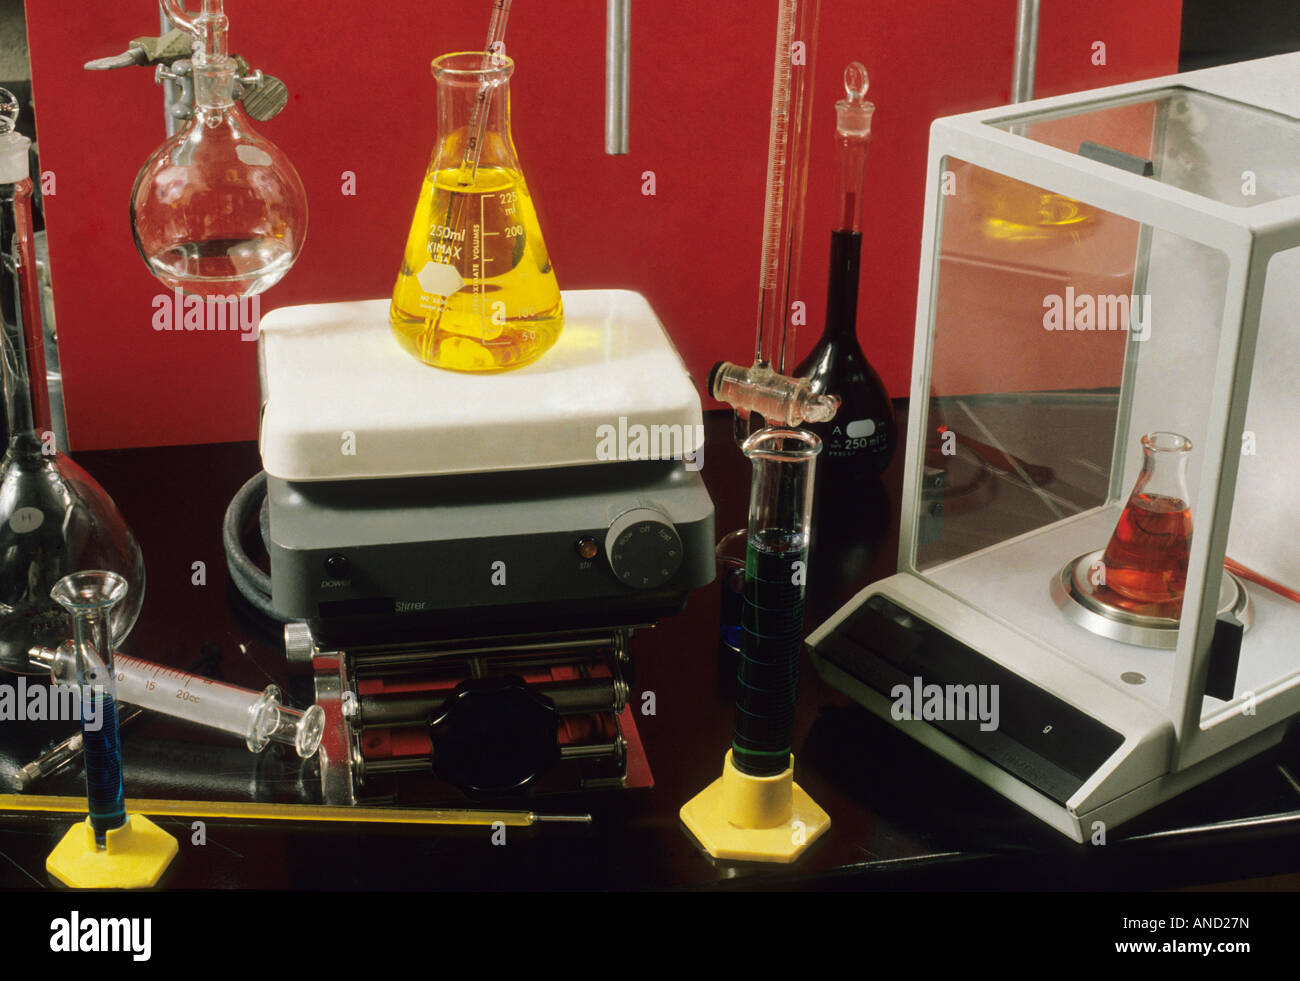 Apparecchiatura chimica bicchieri provette misurazioni scienze chimiche vuoto termometro agitatore calore Foto Stock